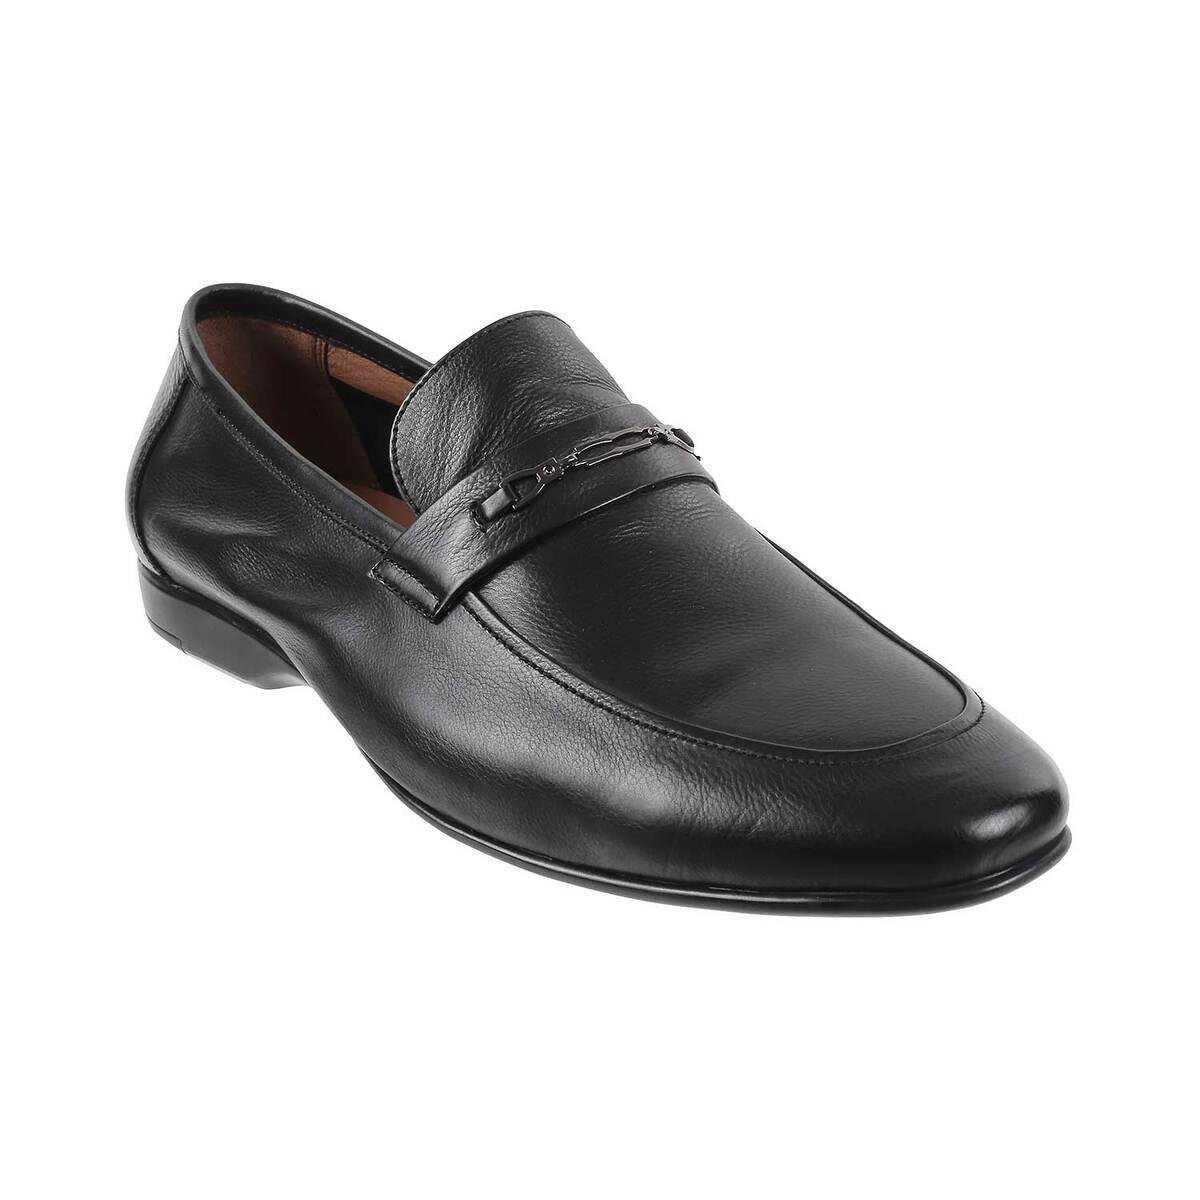 Buy Men Black Formal Moccasin Online | SKU: 14-1105-11-40-Metro Shoes